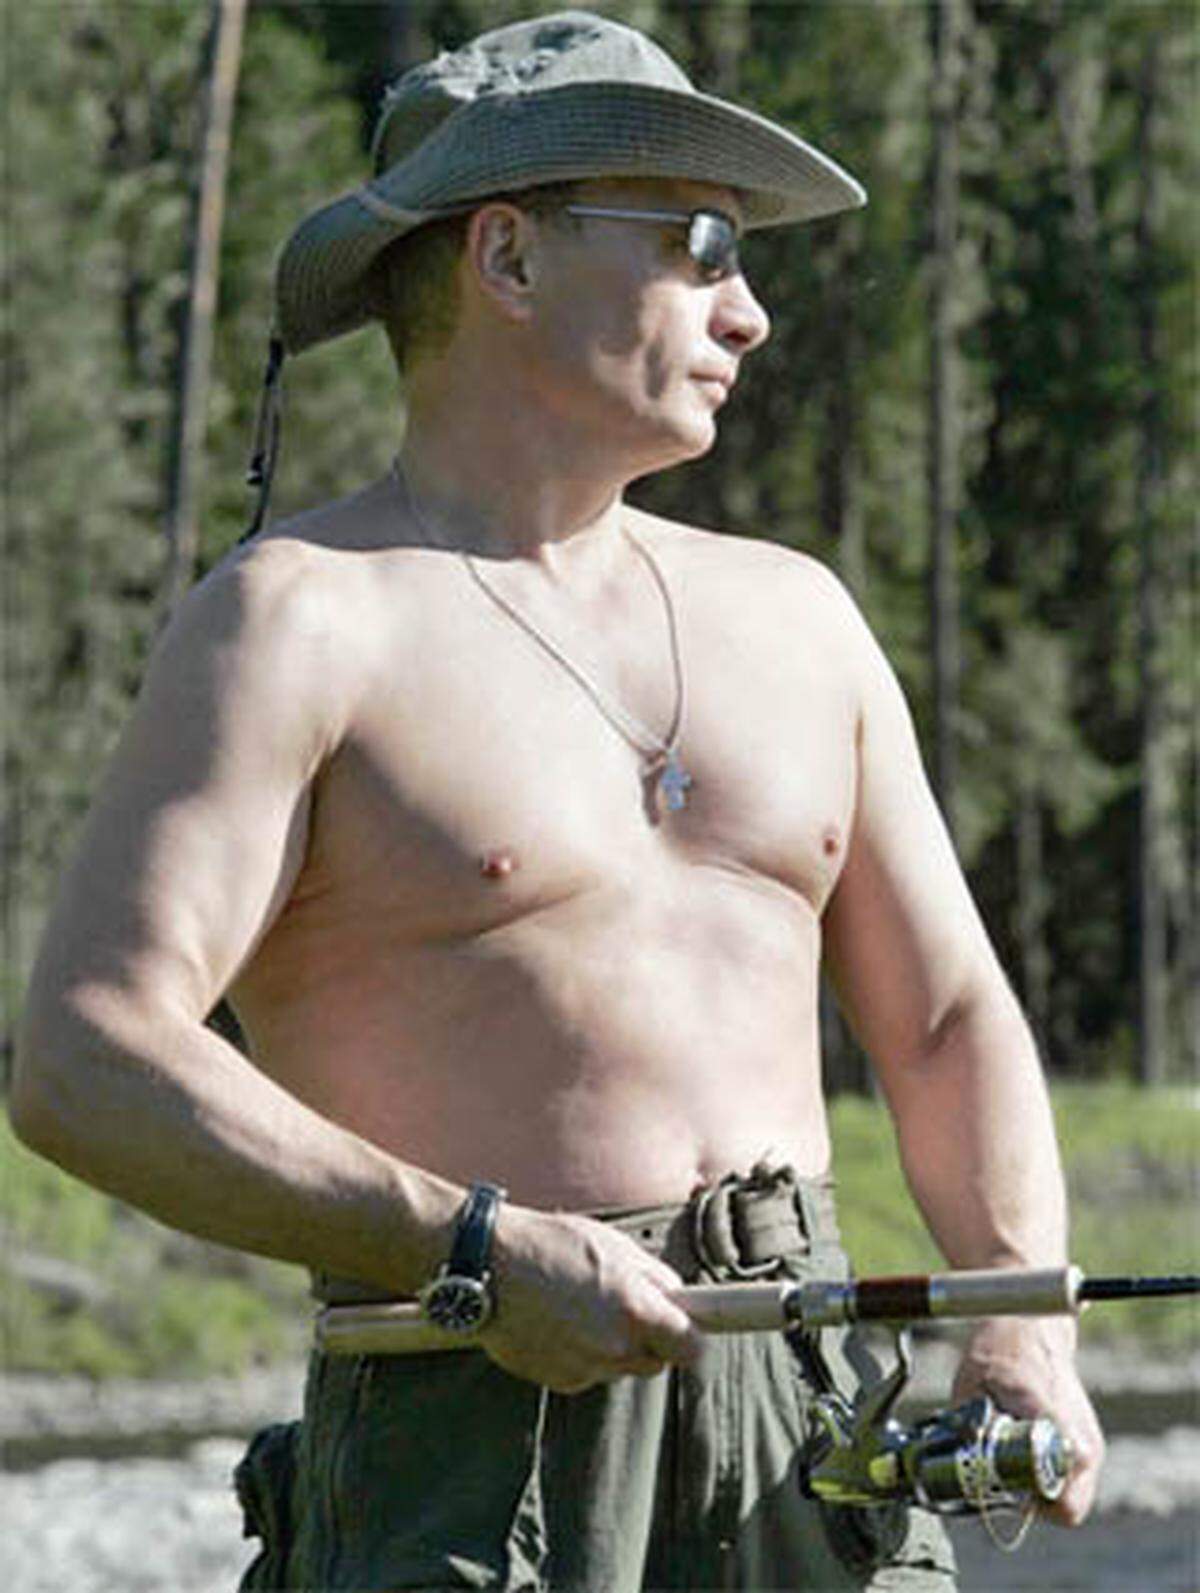 Auch Russlands Präsident Wladimir Putin präsentierte schon einmal die nackte Brust: Er stellte sich beim Fischen als starker Mann zur Schau, die Bilder gingen um die Welt.